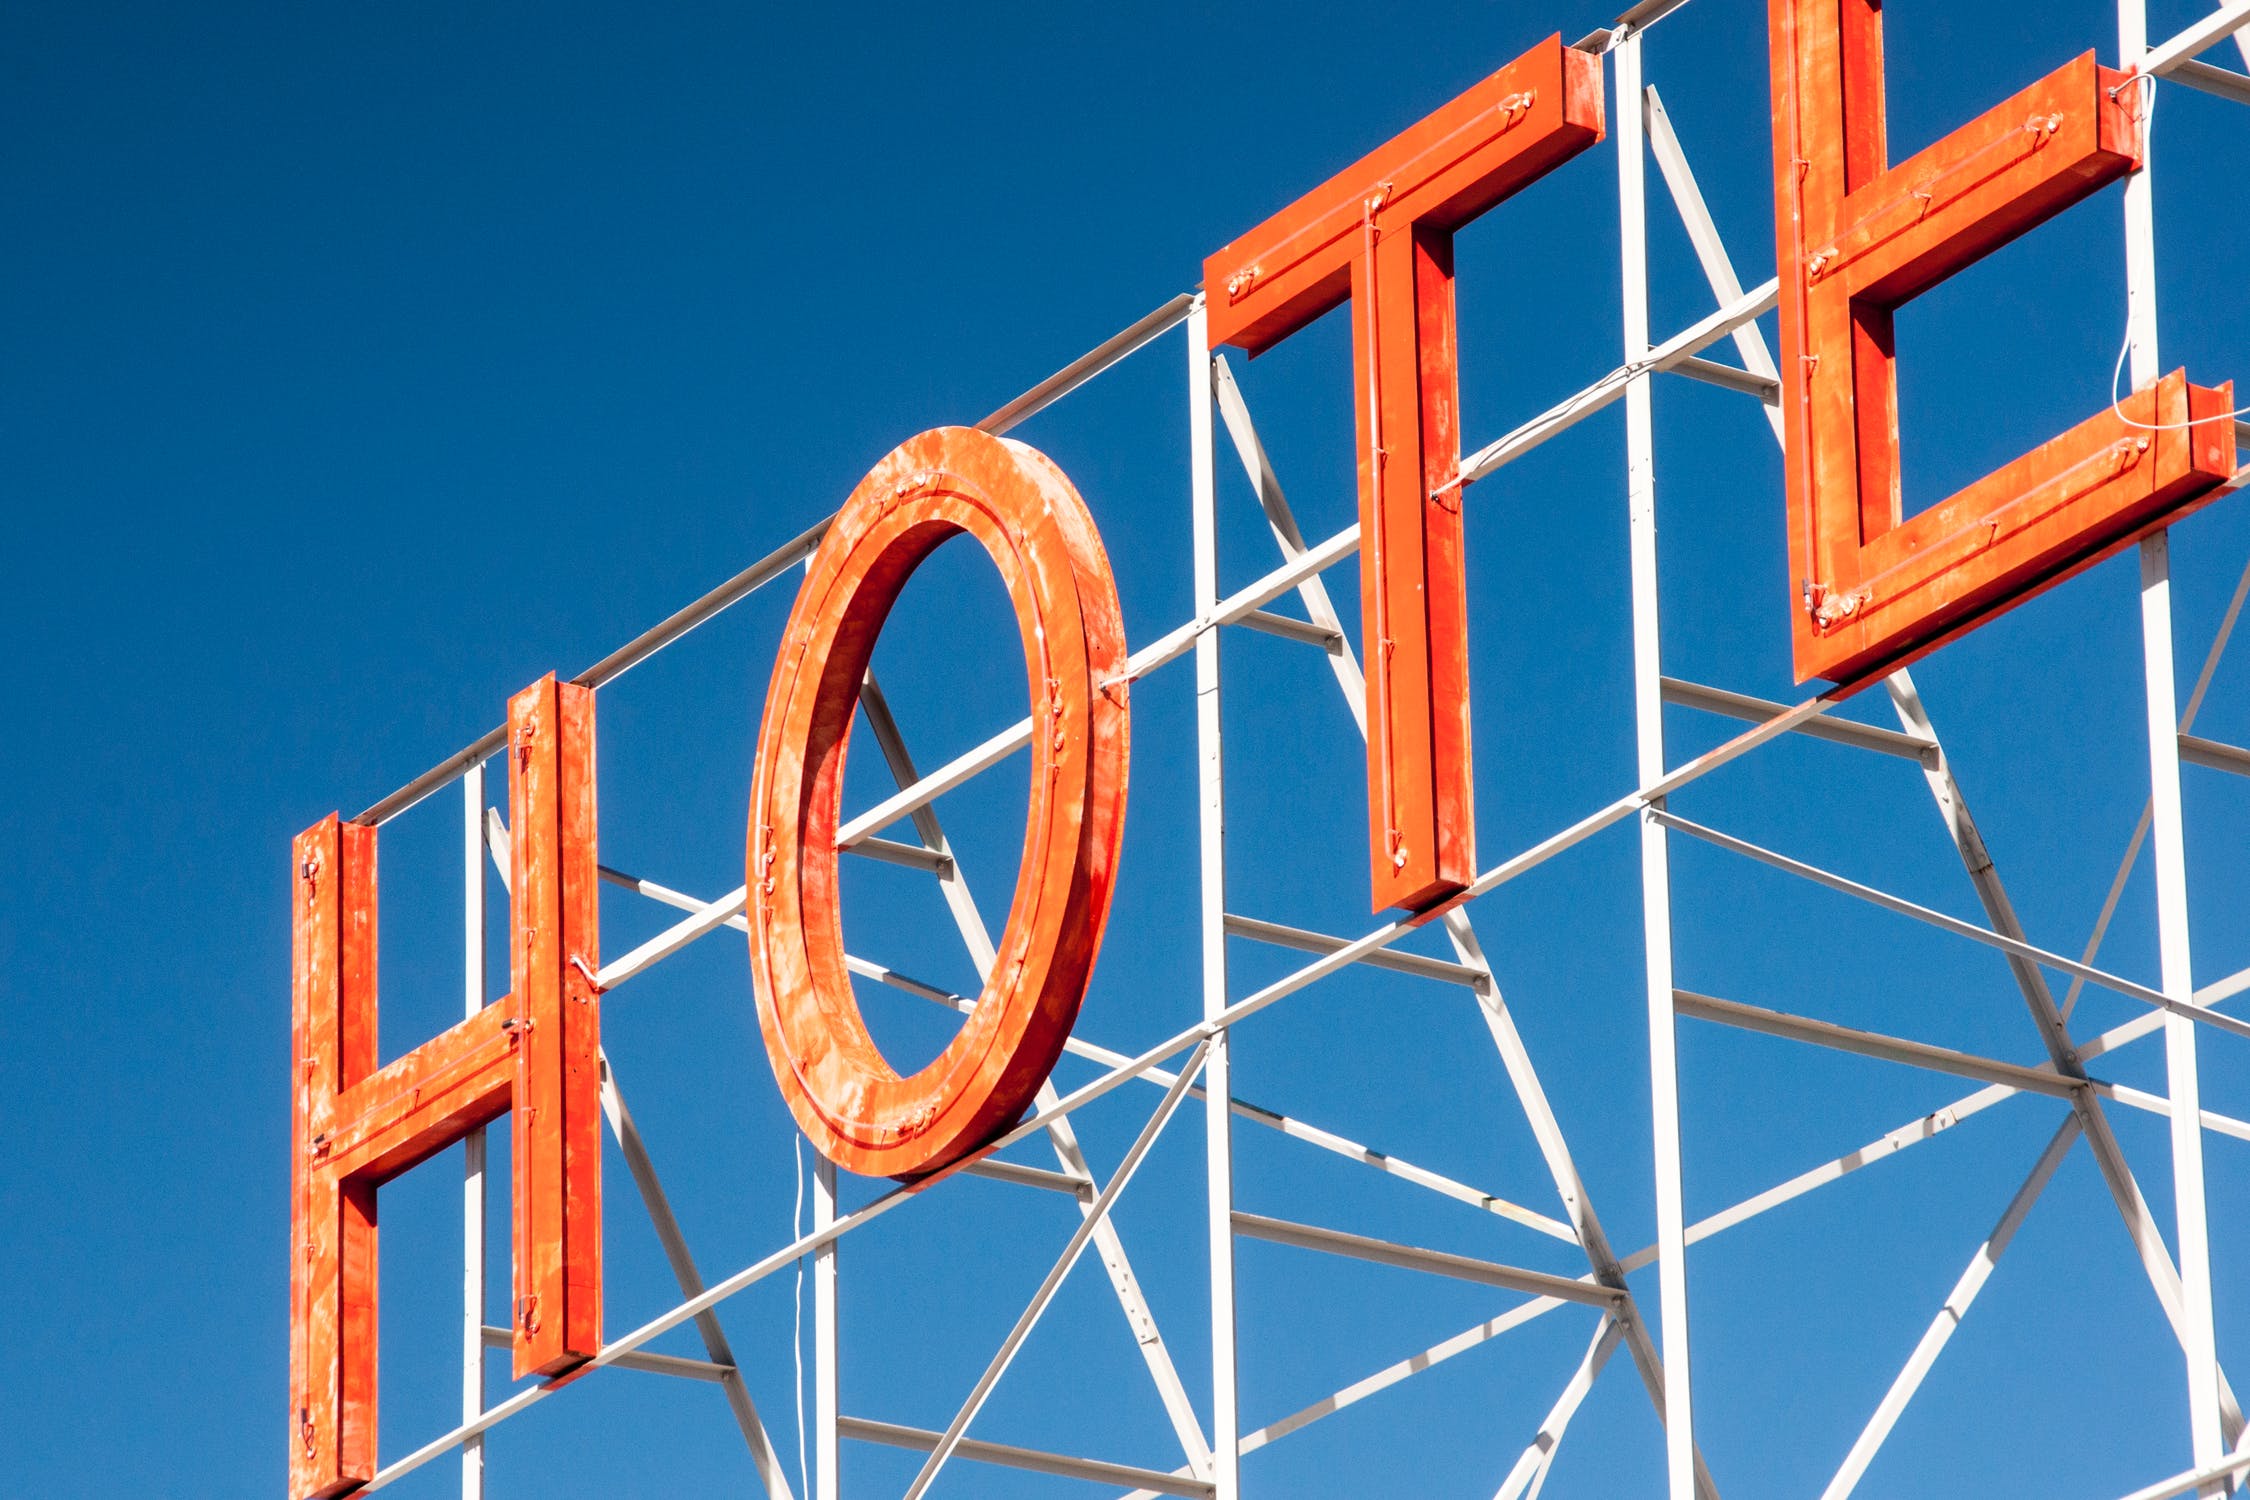 Amex GBT confirme la complexité de la tarification hôtelière